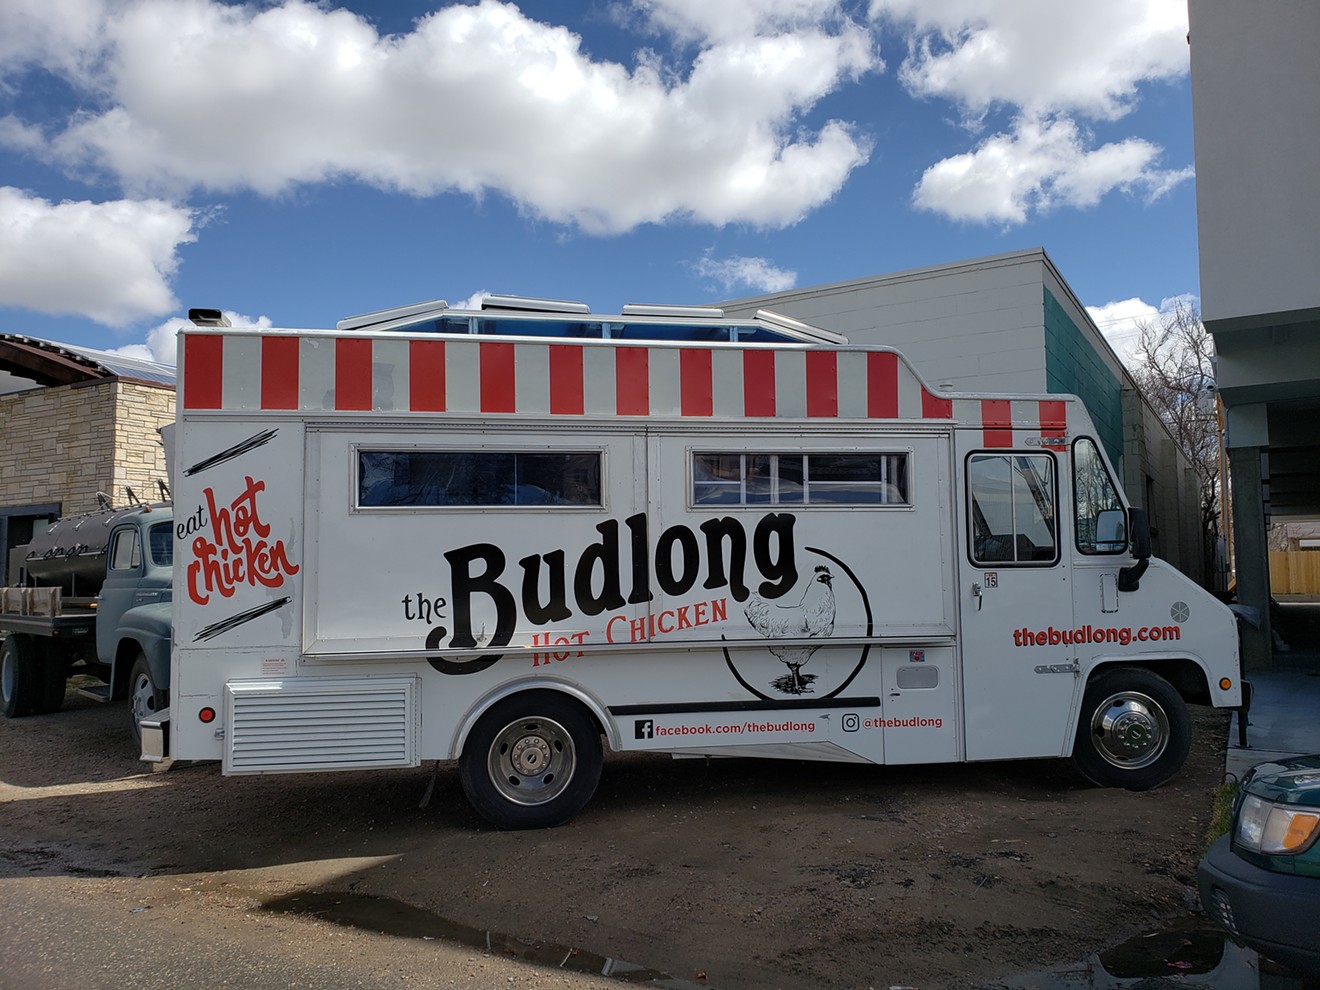 The Budlong Hot Chicken truck.